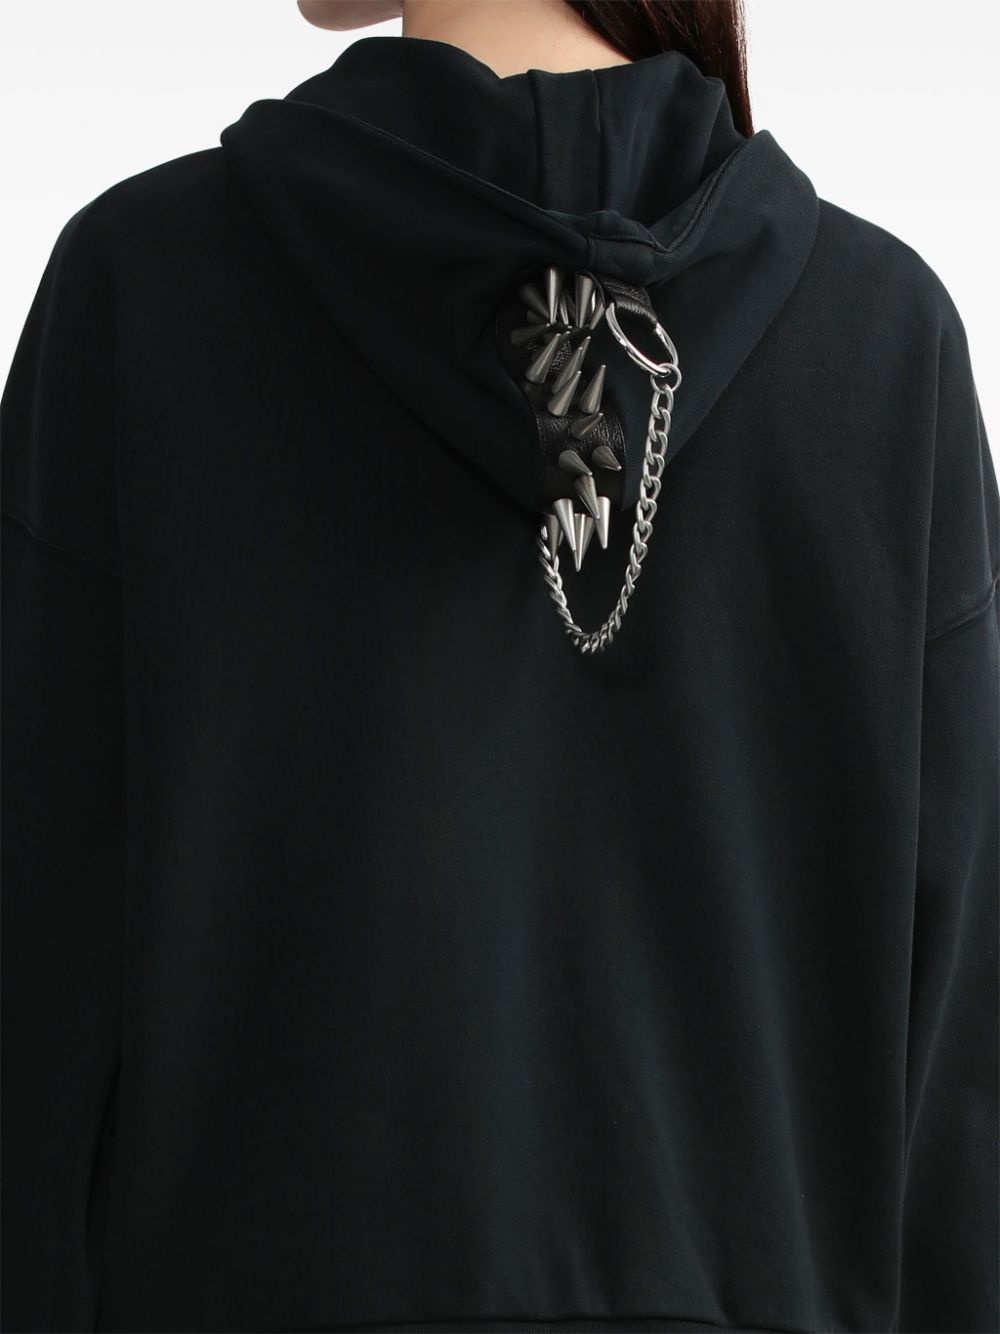 spiked zip-up hoodie - 5